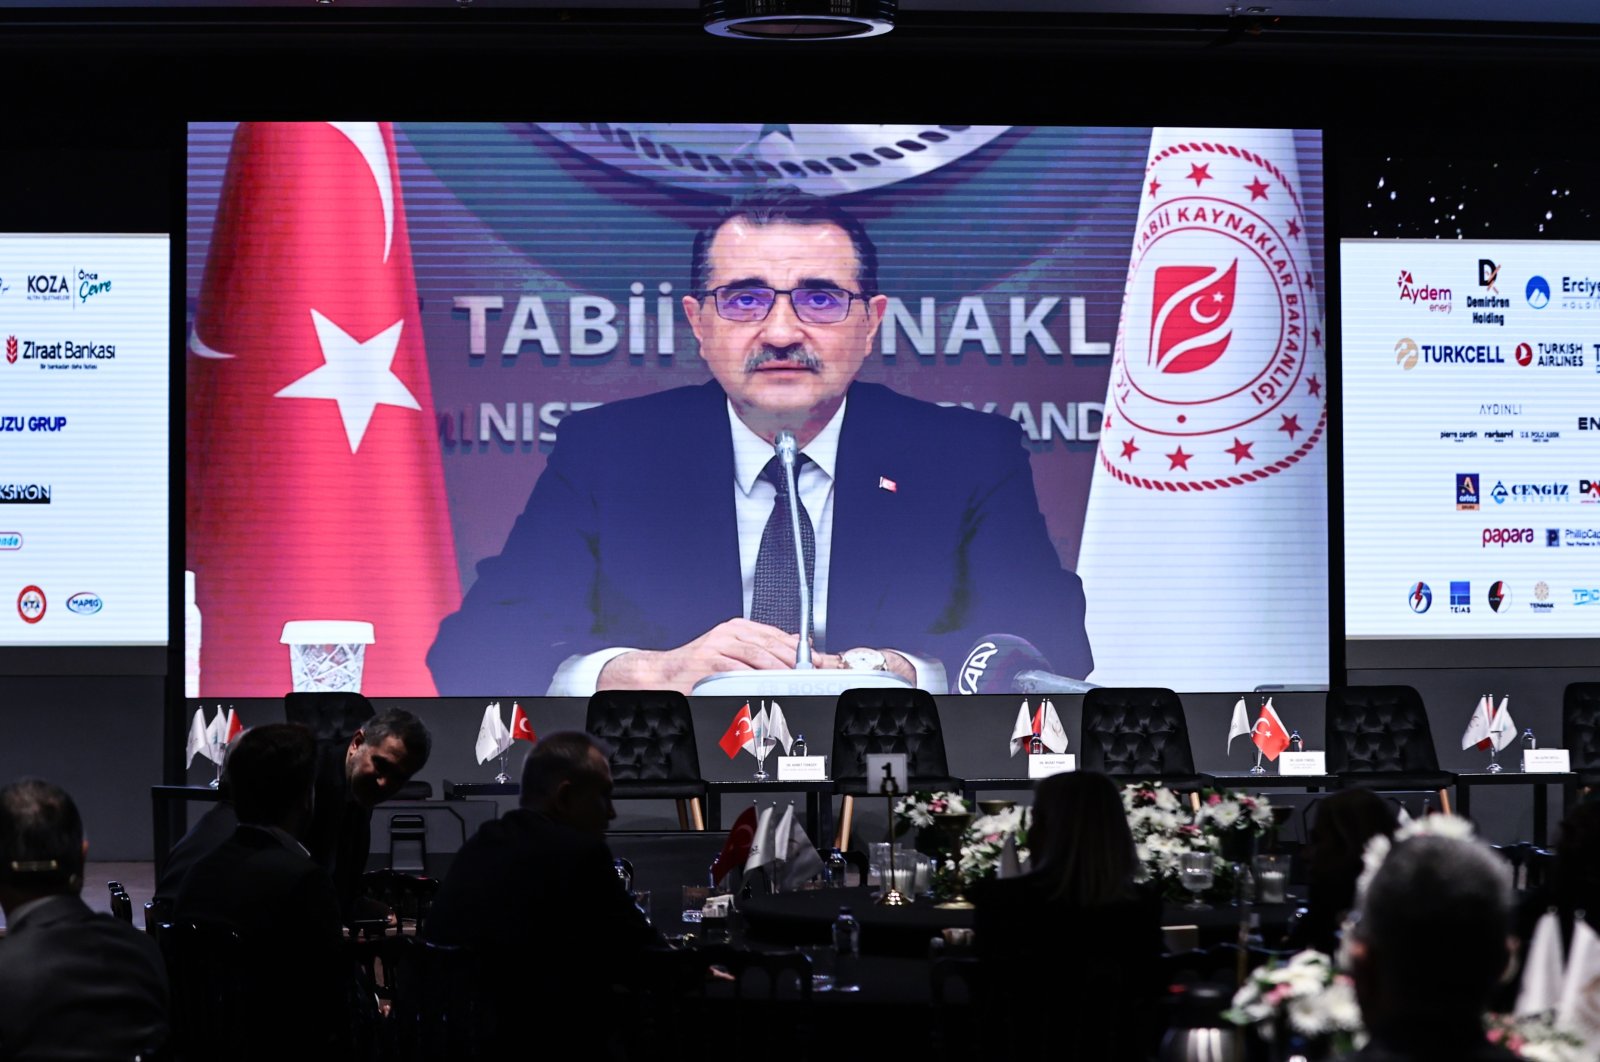 Türkiye berupaya menghadirkan sumber daya energi regional di pusat gasnya